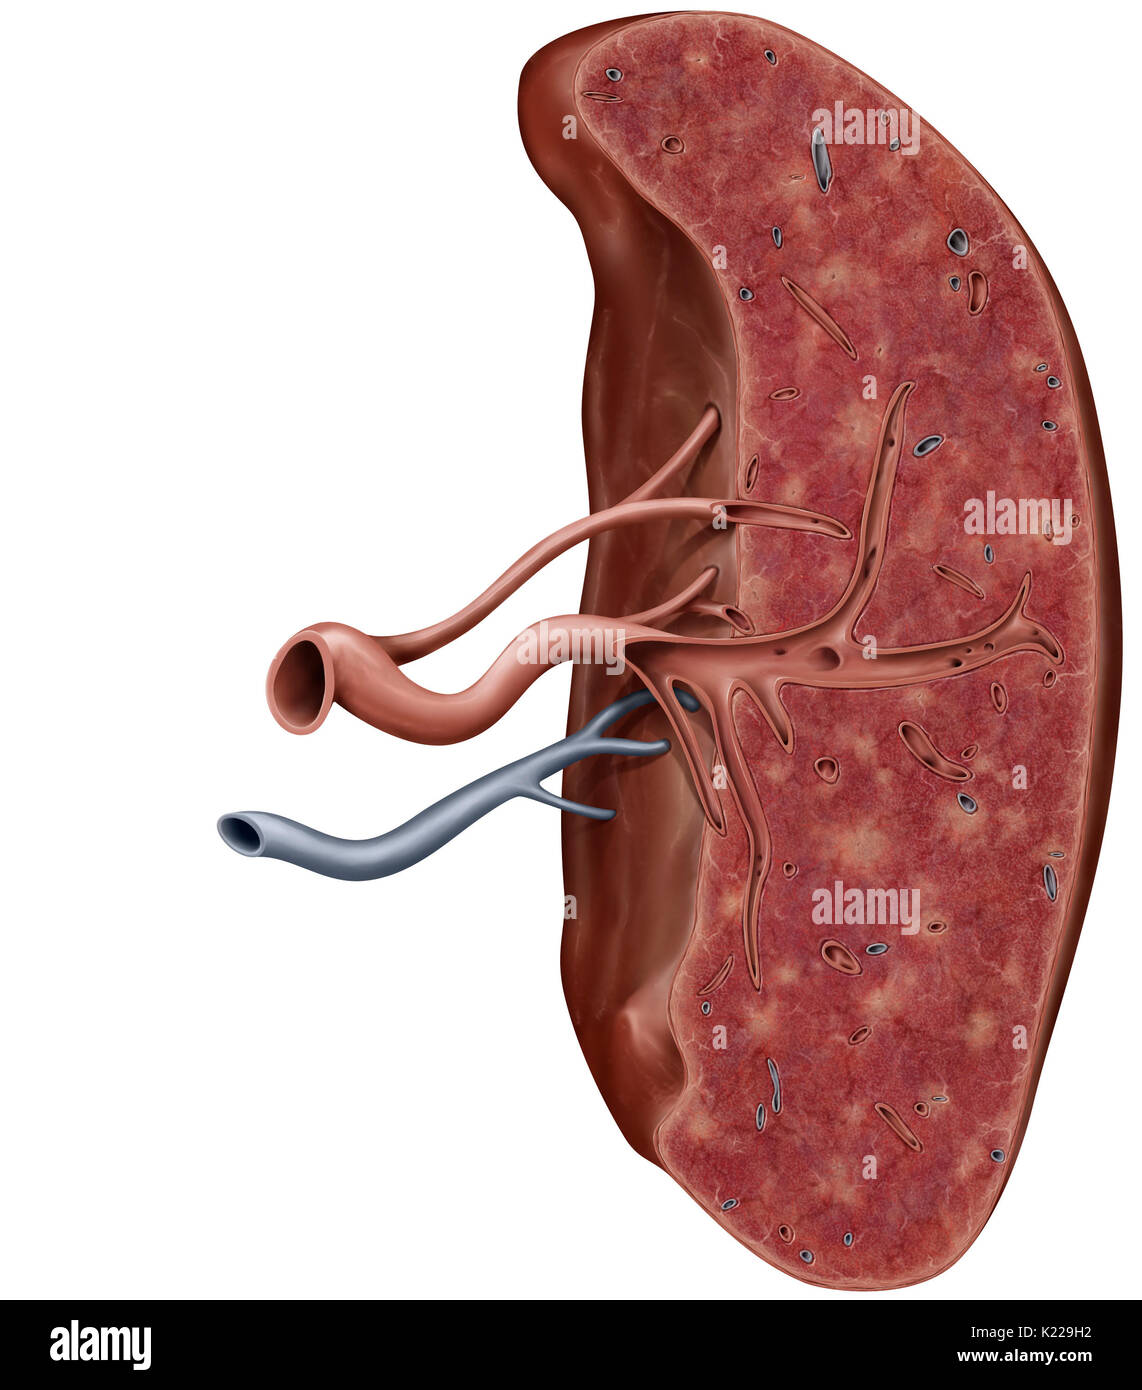 Organo linfatico situato tra lo stomaco e il pancreas; sito della produzione di globuli bianchi e gli anticorpi. Foto Stock